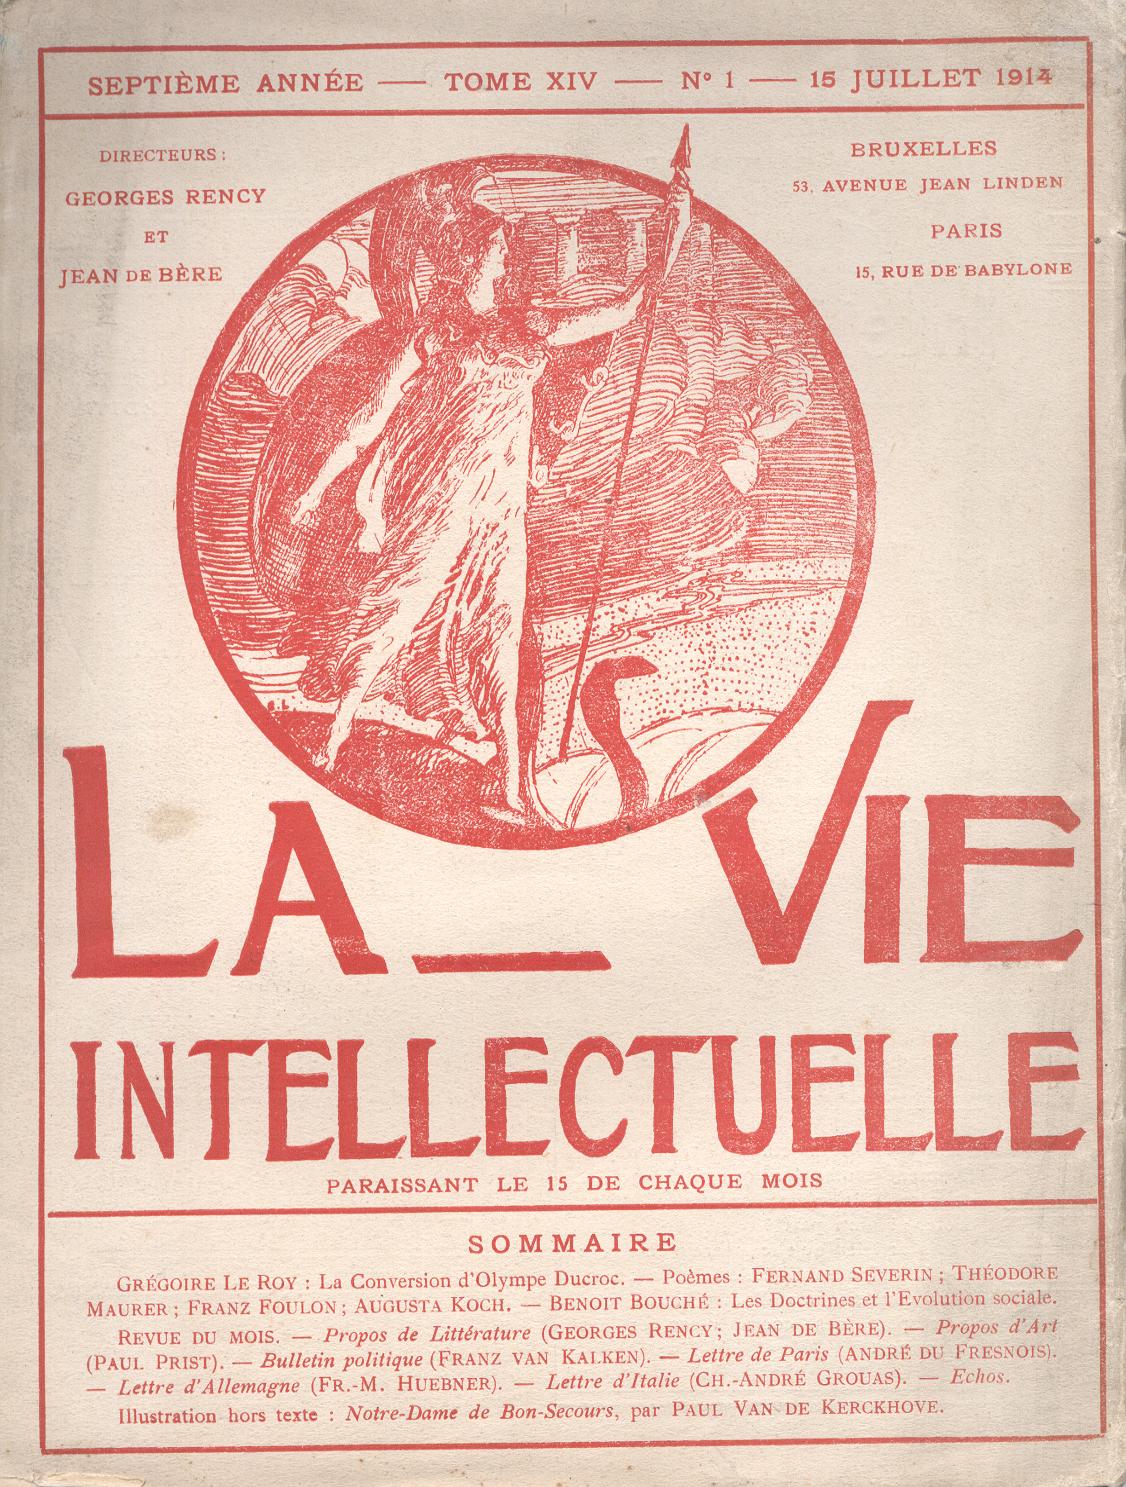 LA VIE INTELLECTUELLE (7e année, n°1, 15 juillet 1914)